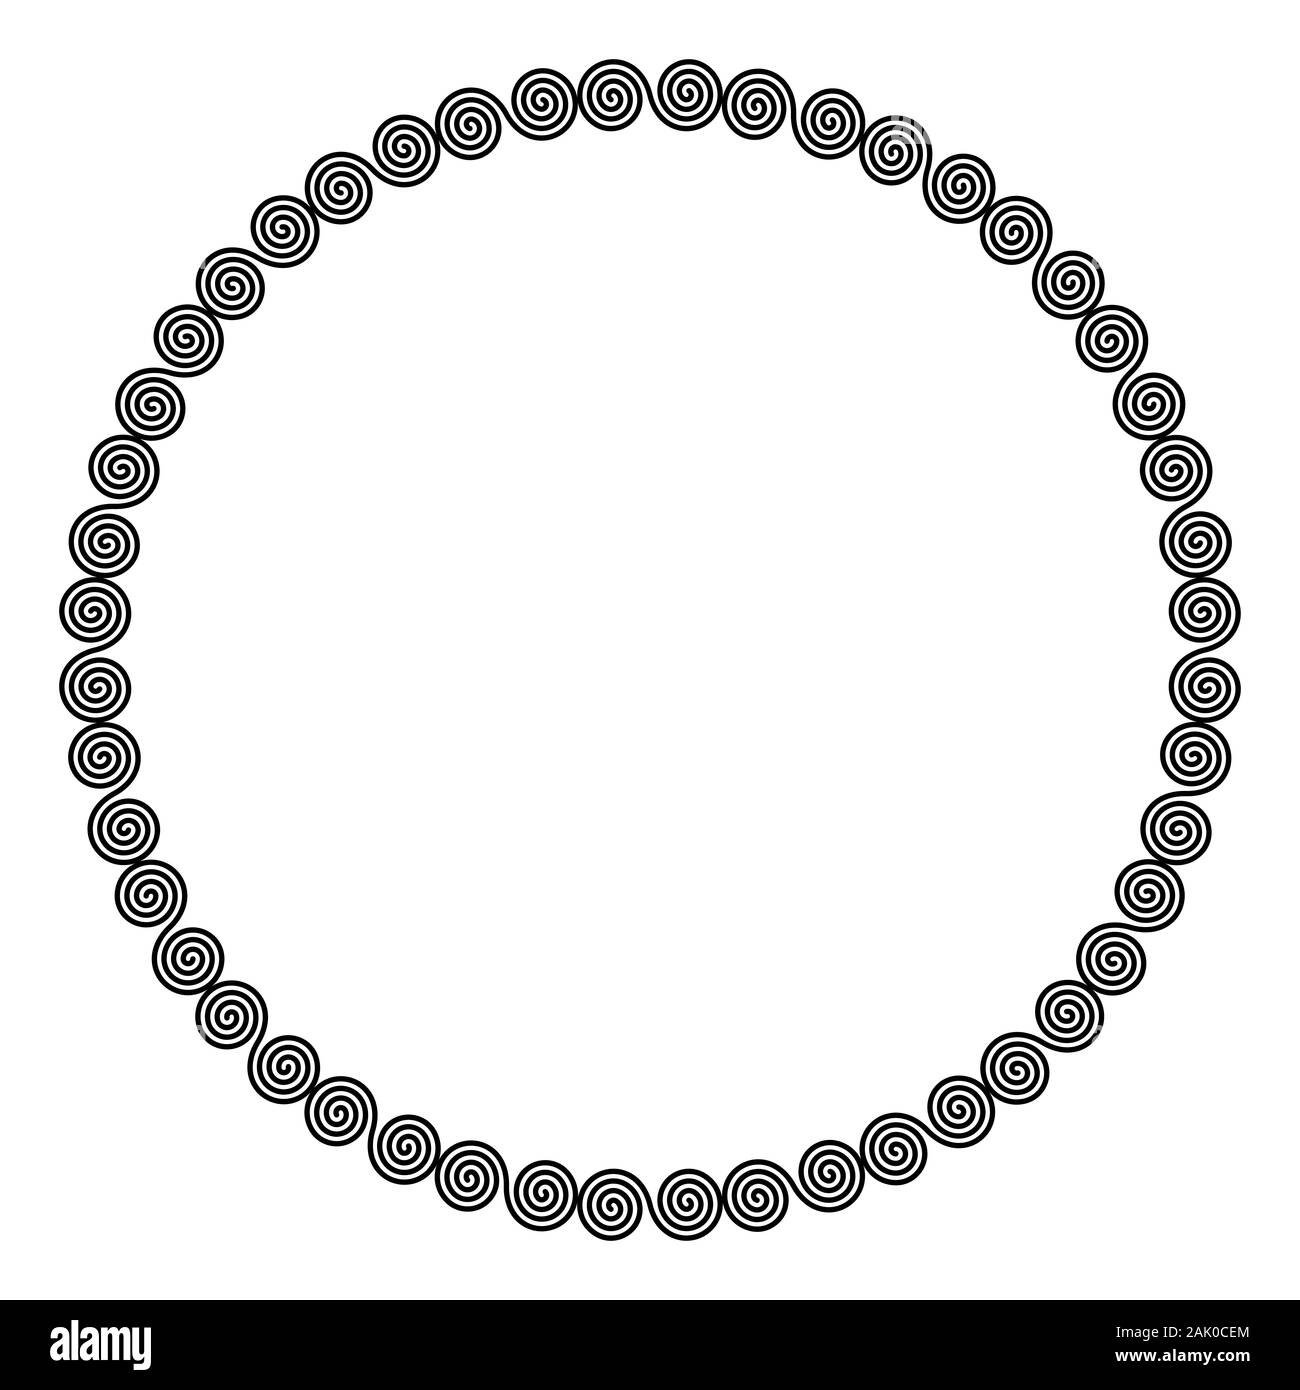 Kreis förmigen Rahmen der linearen doppelte Spiralen. Verriegelt, kombinierte Spiralen, eine dekorative Grenze, von Linien gebaut, in die ein wiederholtes Motiv geformt Stockfoto